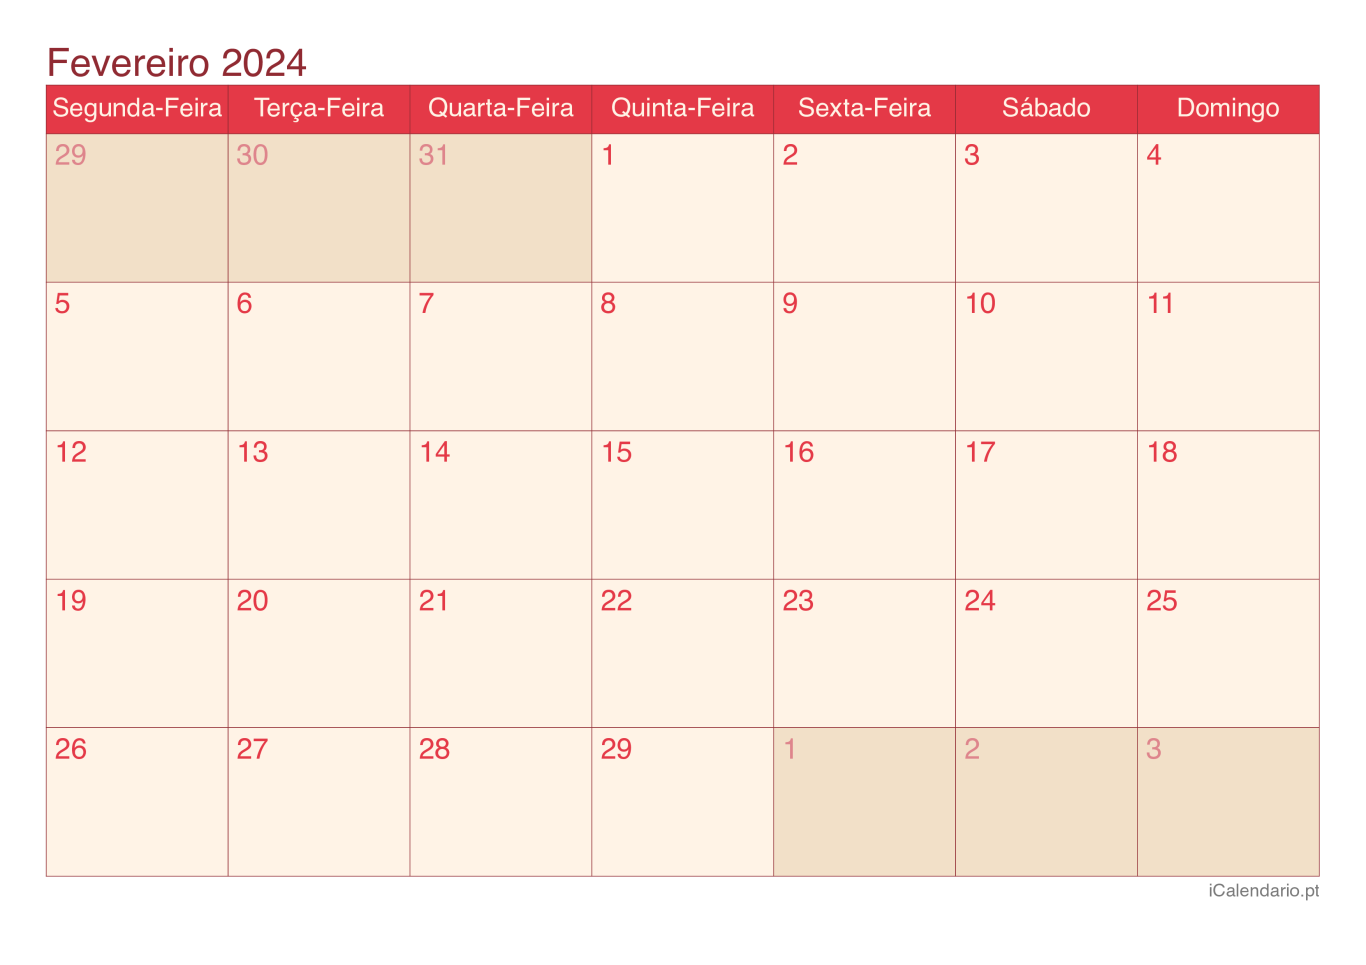 Calendário de fevereiro 2024 - Cherry